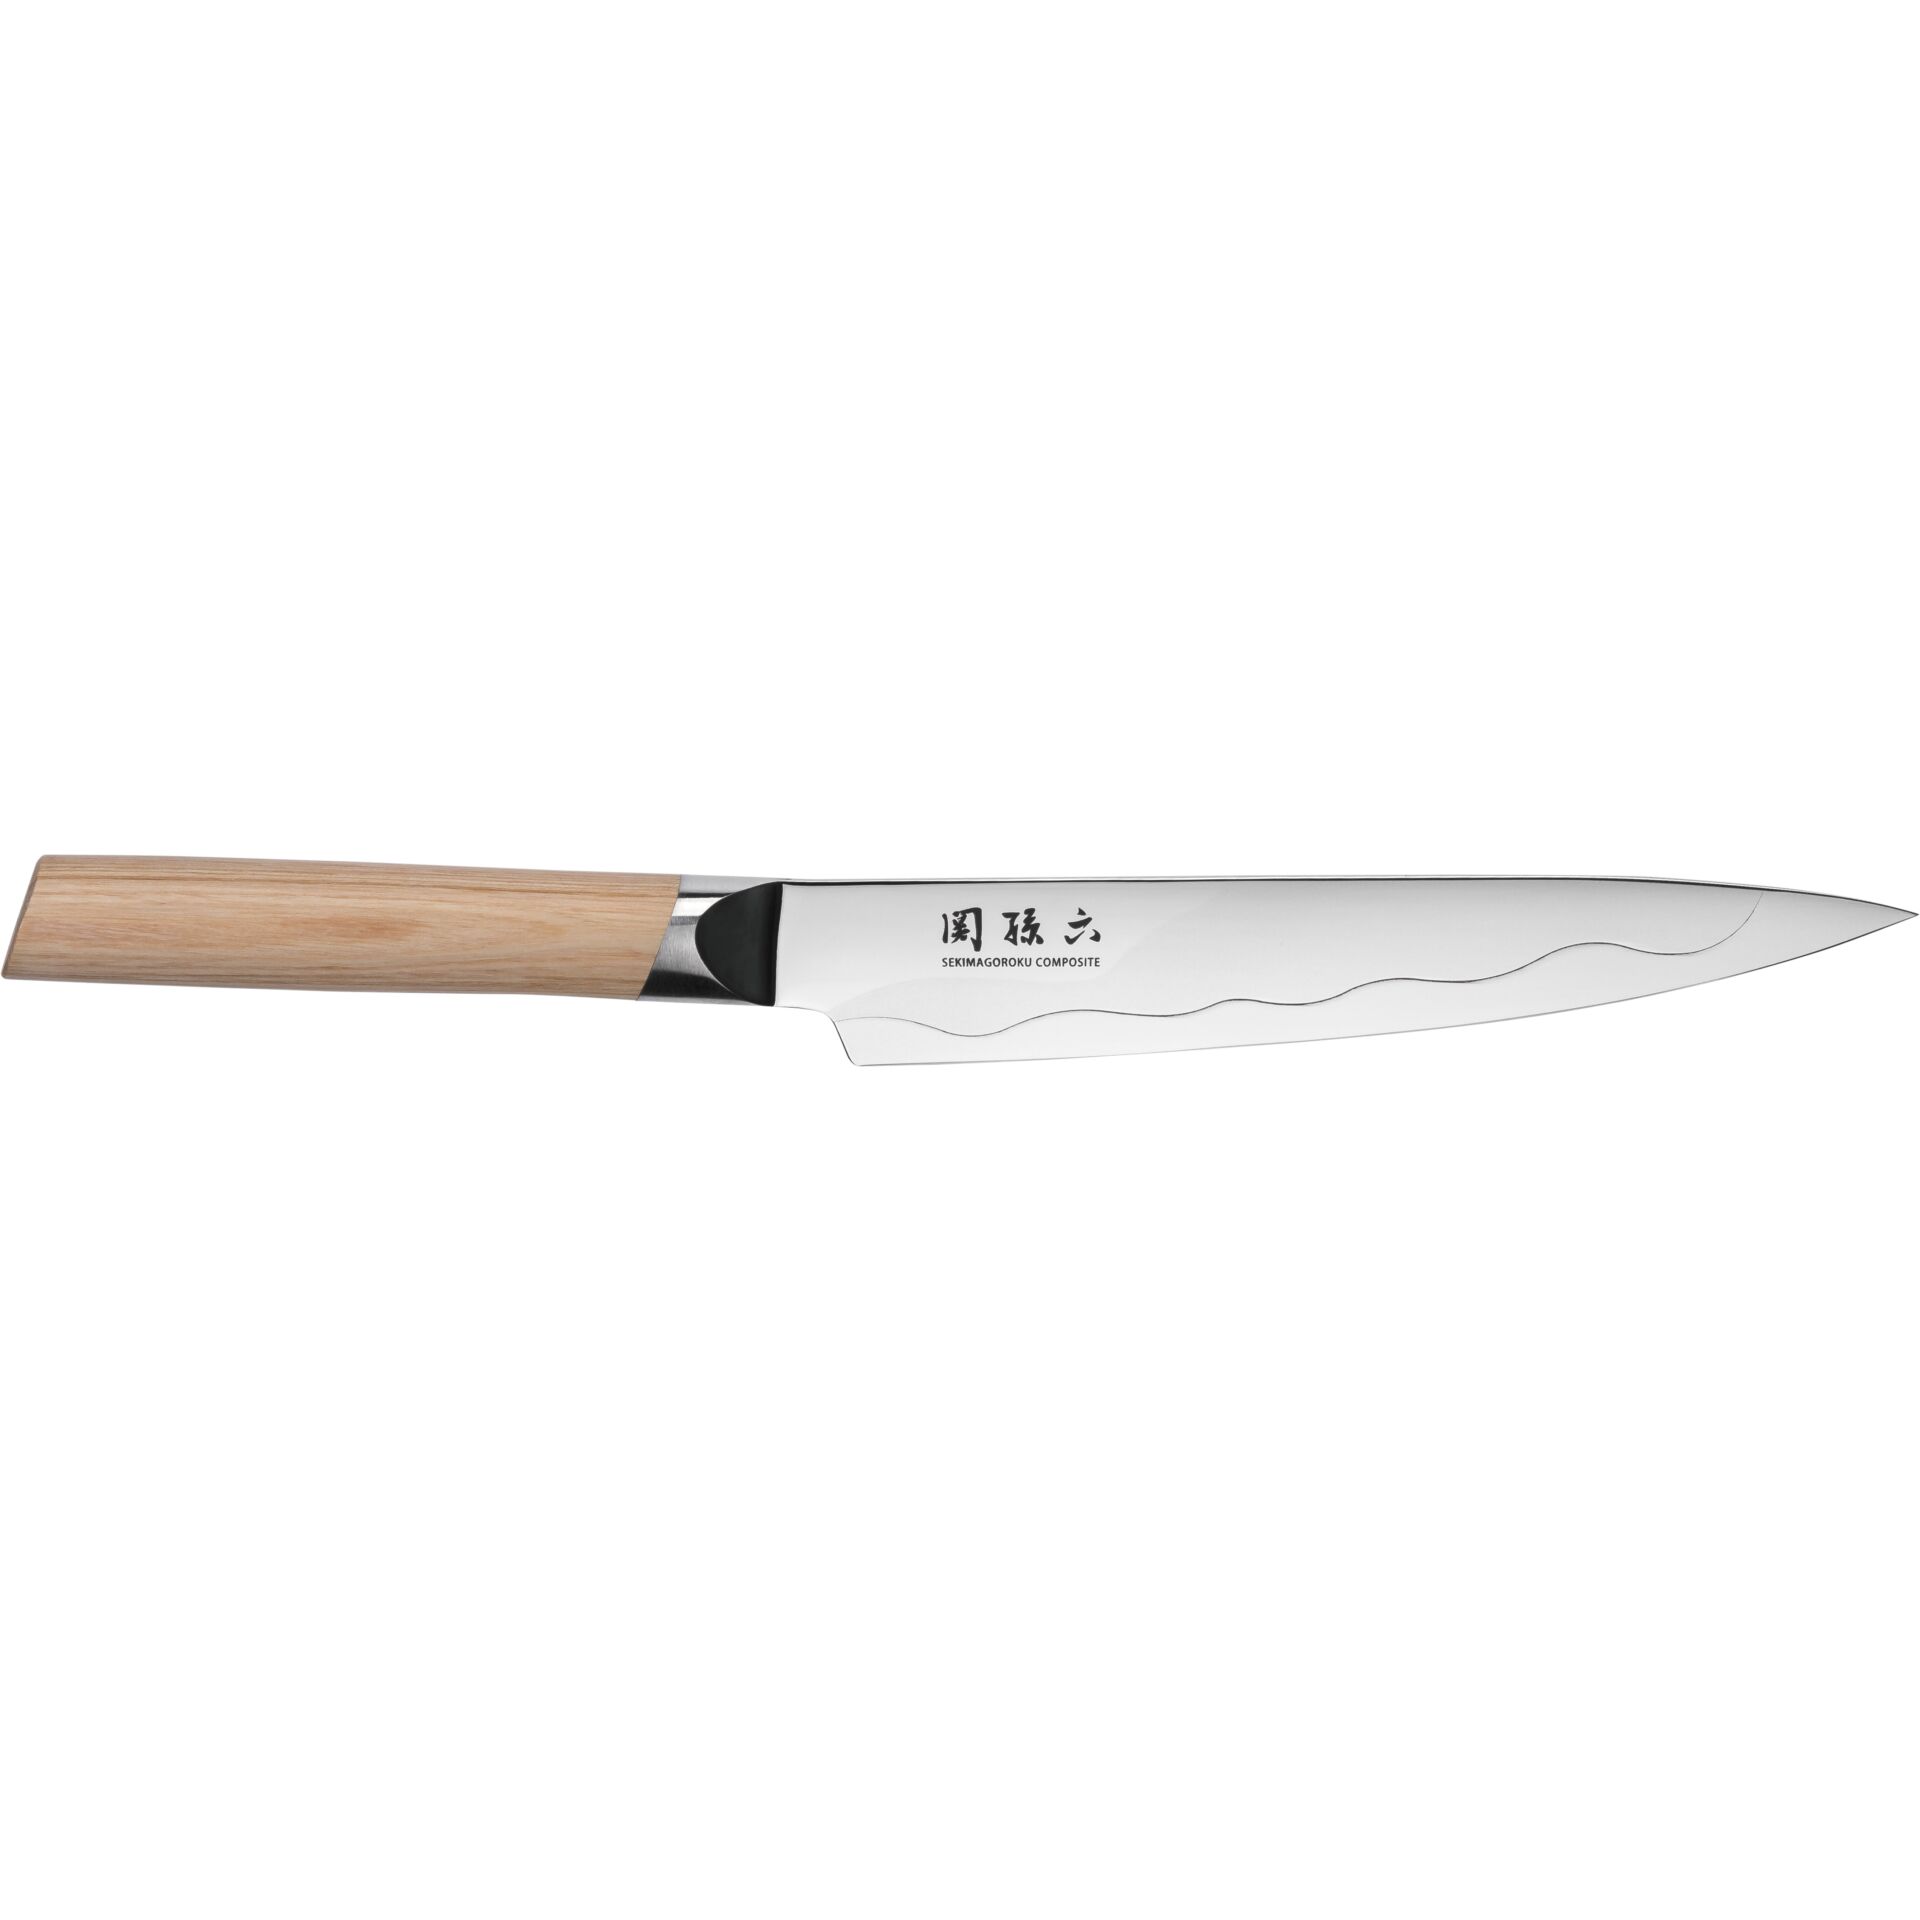 KAI Seki Magoroku Composite coltello multiuso, 15 cm